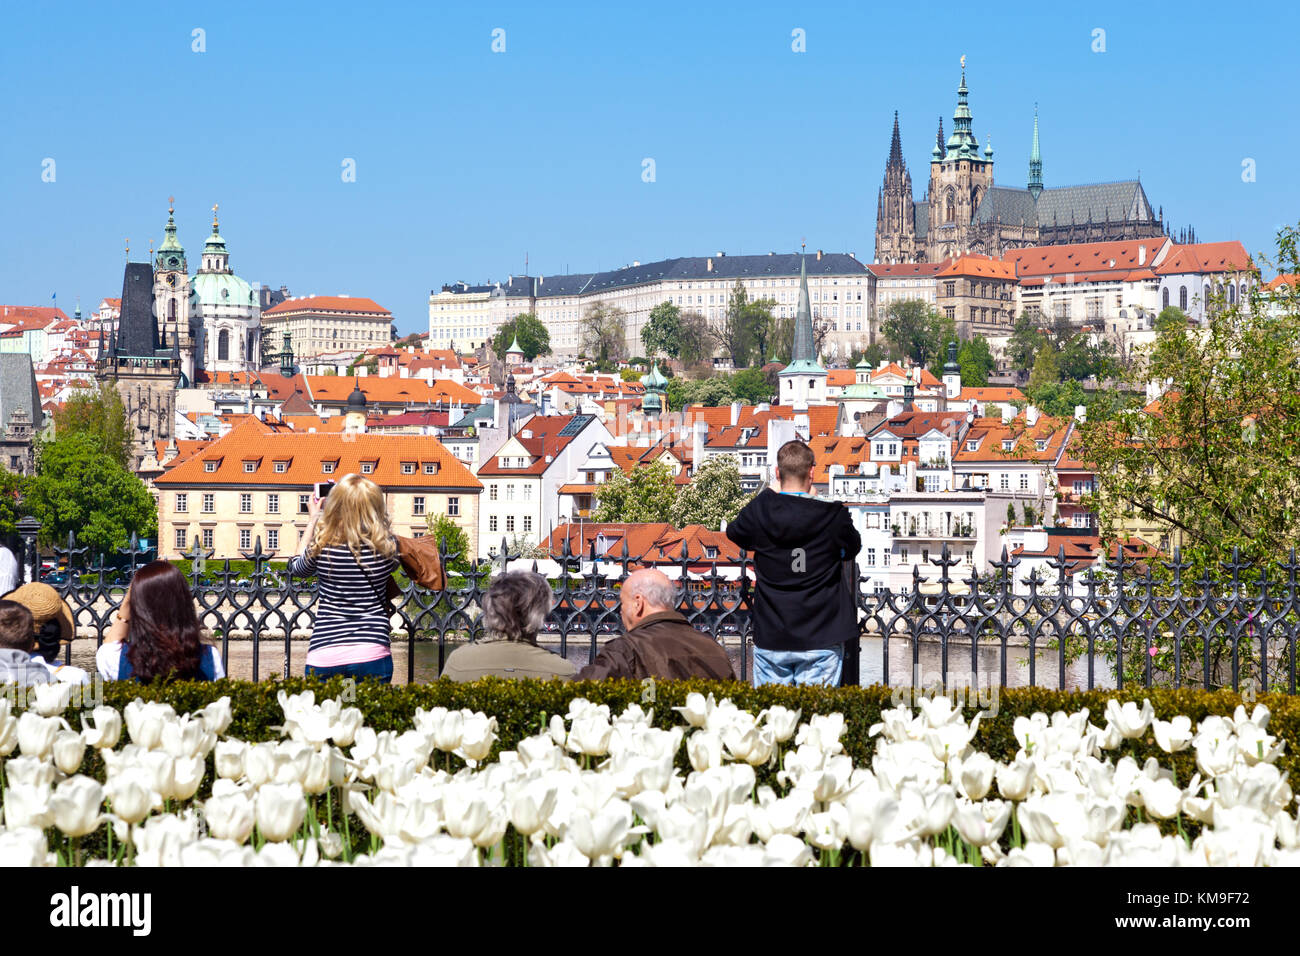 Place Krizovnicke, petite ville st., cathédrale Saint-Guy et château de Prague (UNESCO), Prague, République Tchèque - ville au printemps avec des tulipes fleurs Banque D'Images